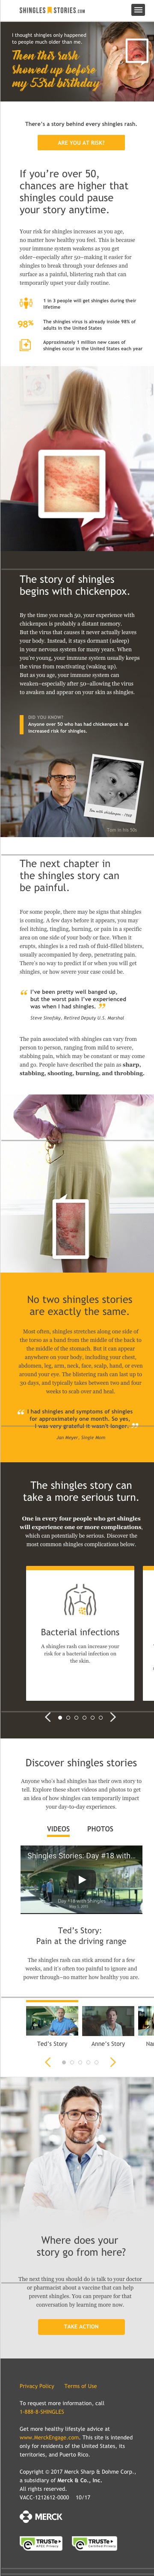 Shingles Stories - Unbranded Website for Zostavax - Mobile